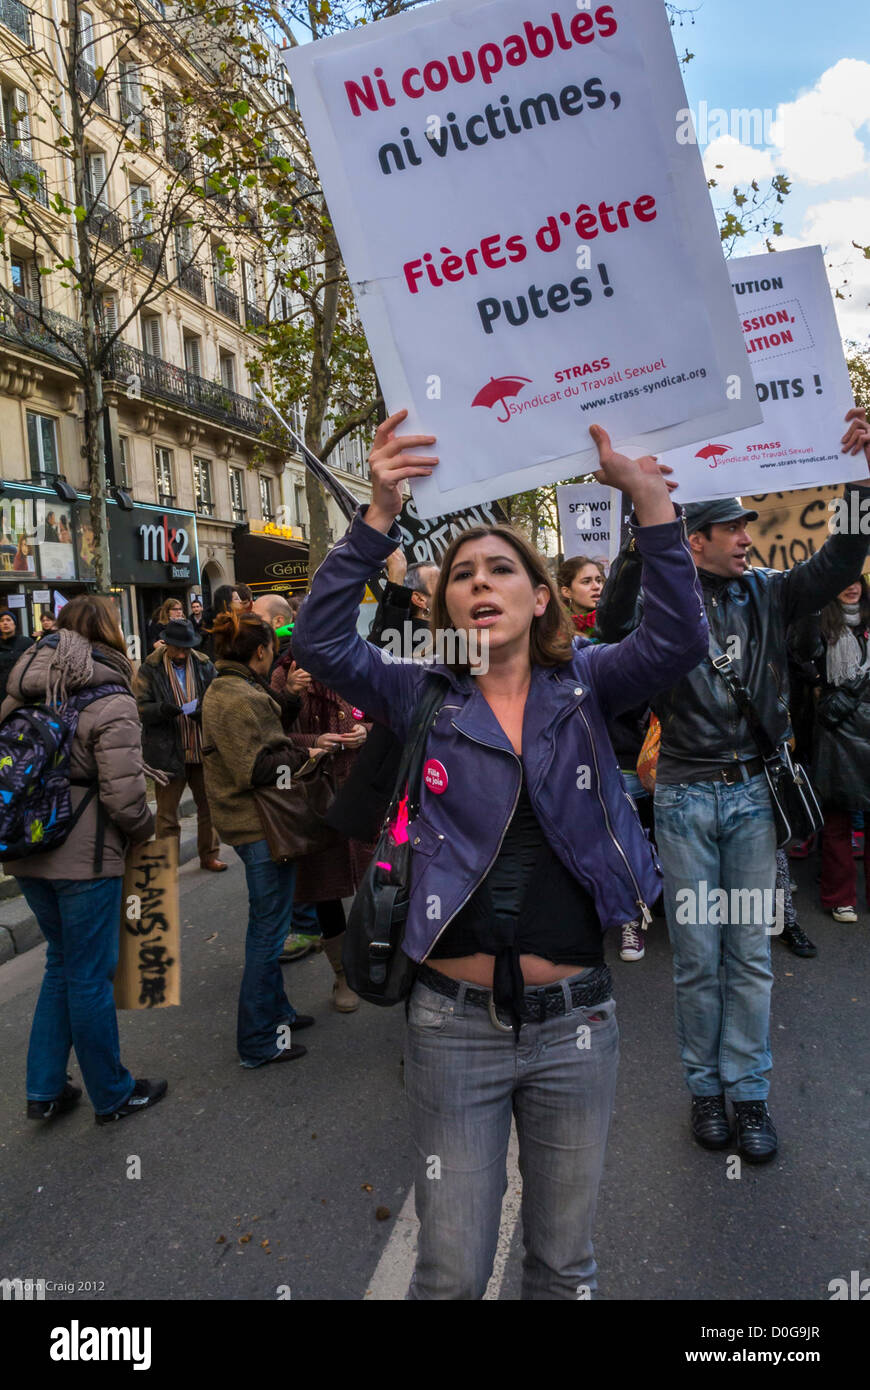 Paris, France, manifestation contre la violence envers les femmes, groupes pour la prostitution légale, Journée internationale des droits de la femme, égalité des femmes, marche de protestation pour les droits civils, signes d'autonomisation des femmes Banque D'Images